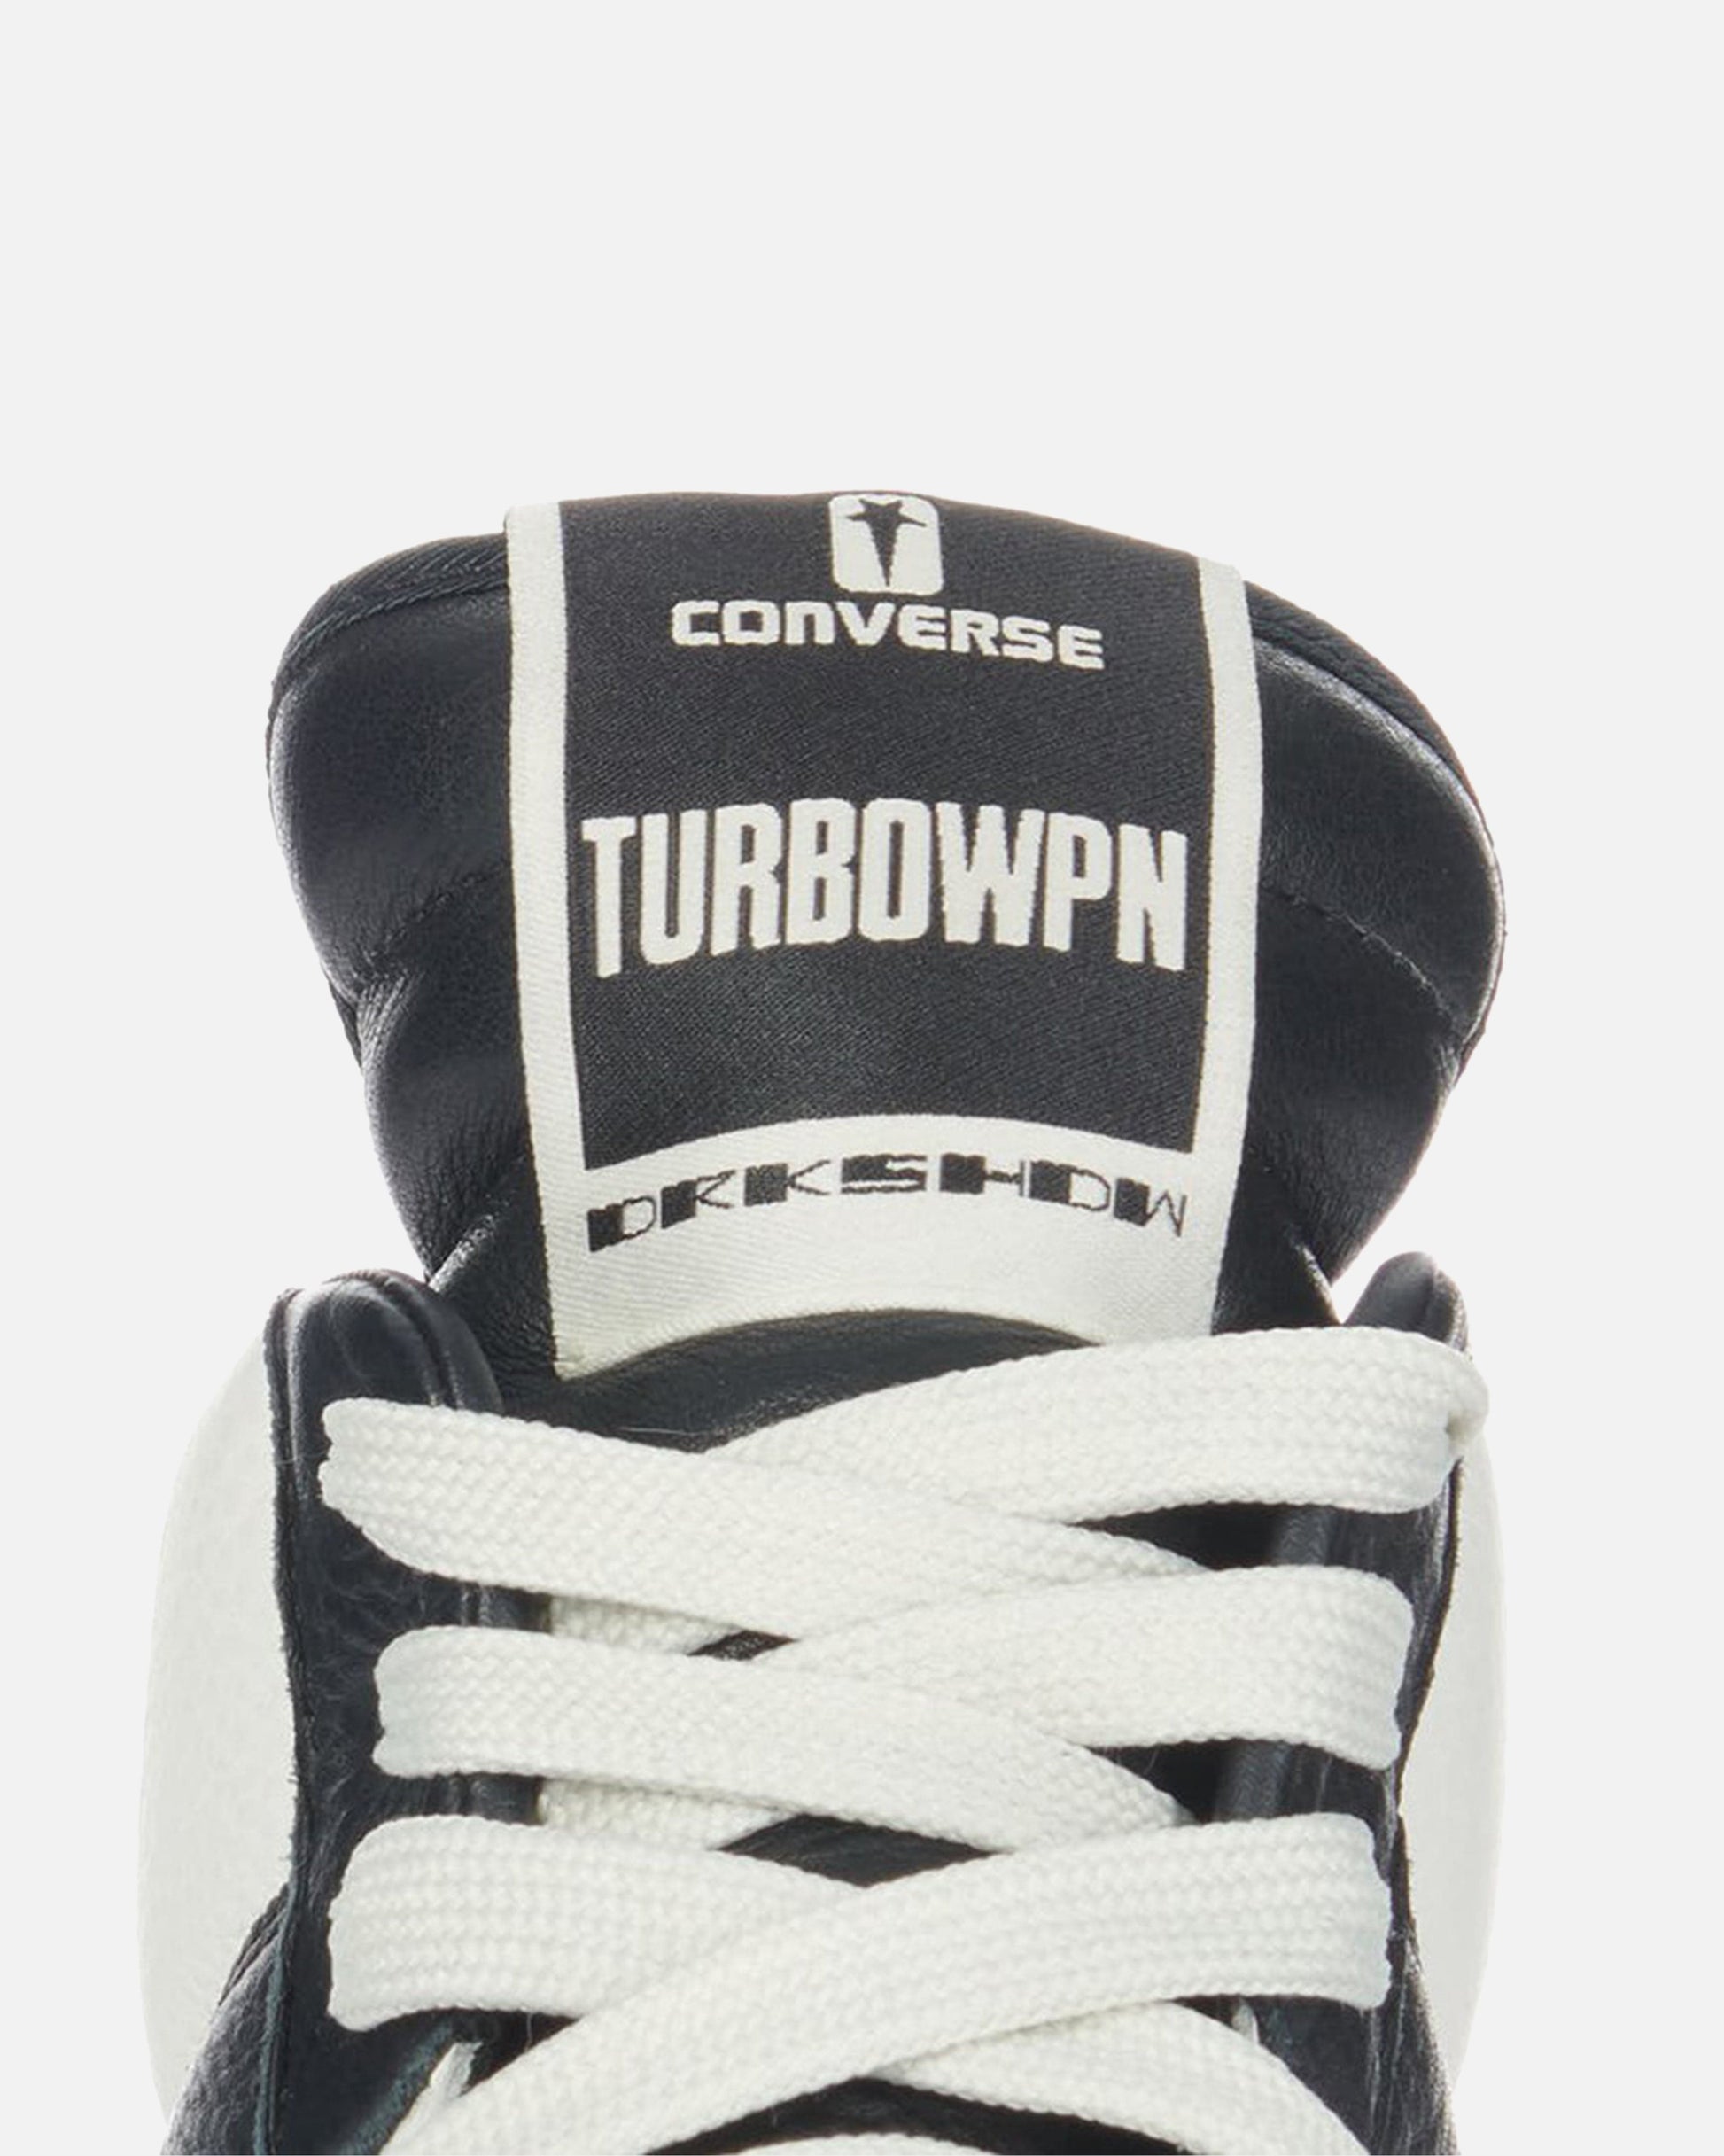 Rick Owens DRKSHDW Men's Sneakers Converse TURBOWPN in Black/Natural